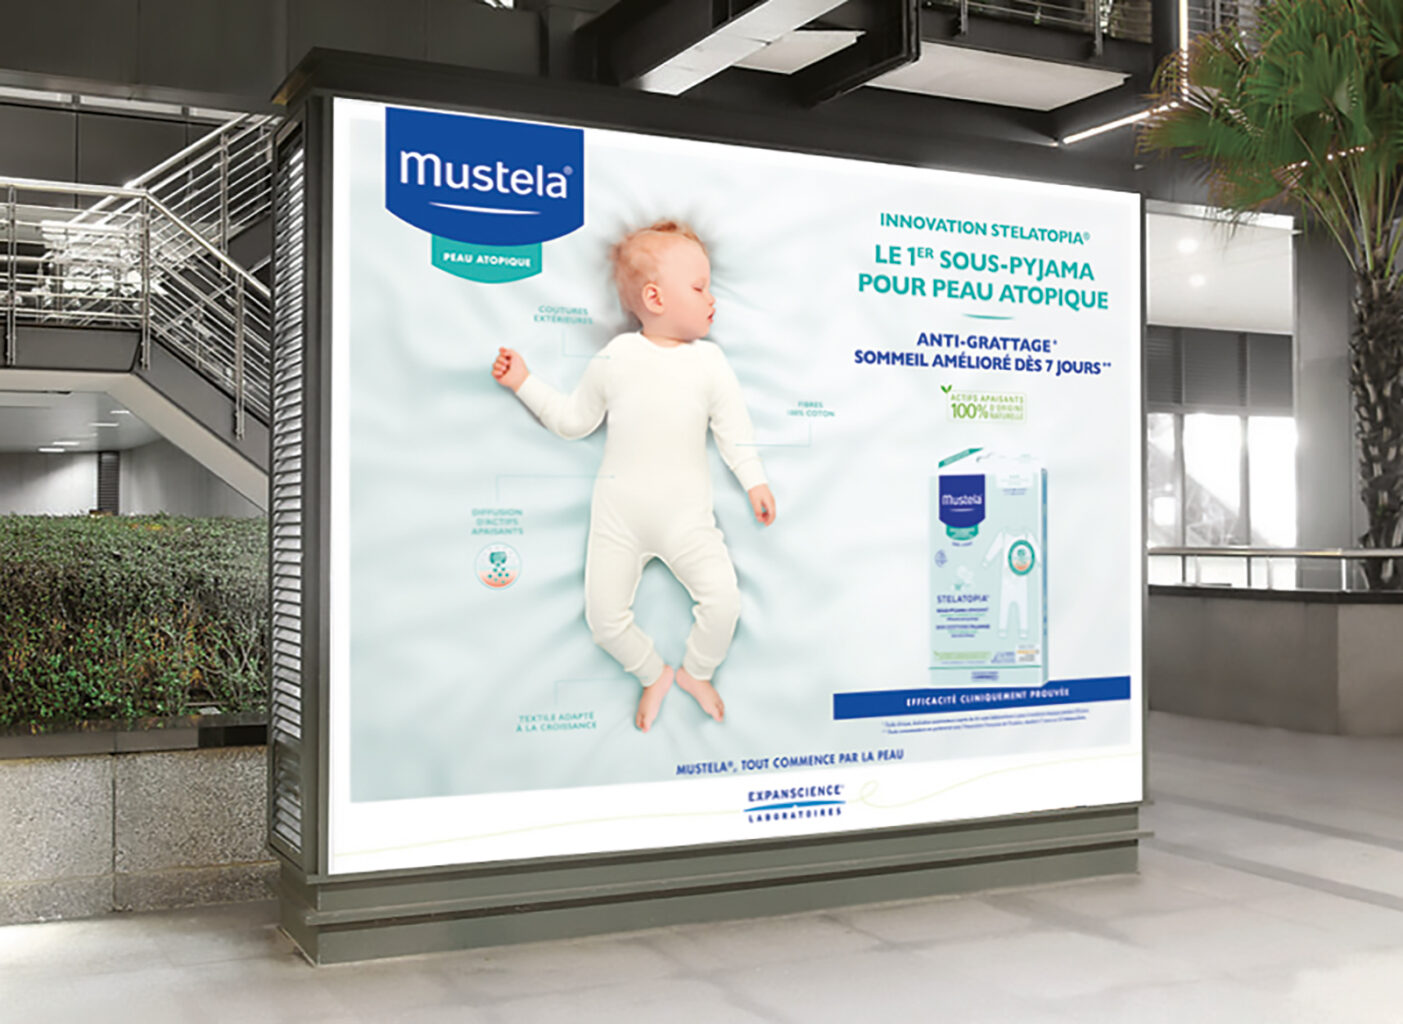 Affiche Mustela pour son sous-pyjama pour peau atopique dans un espace publique